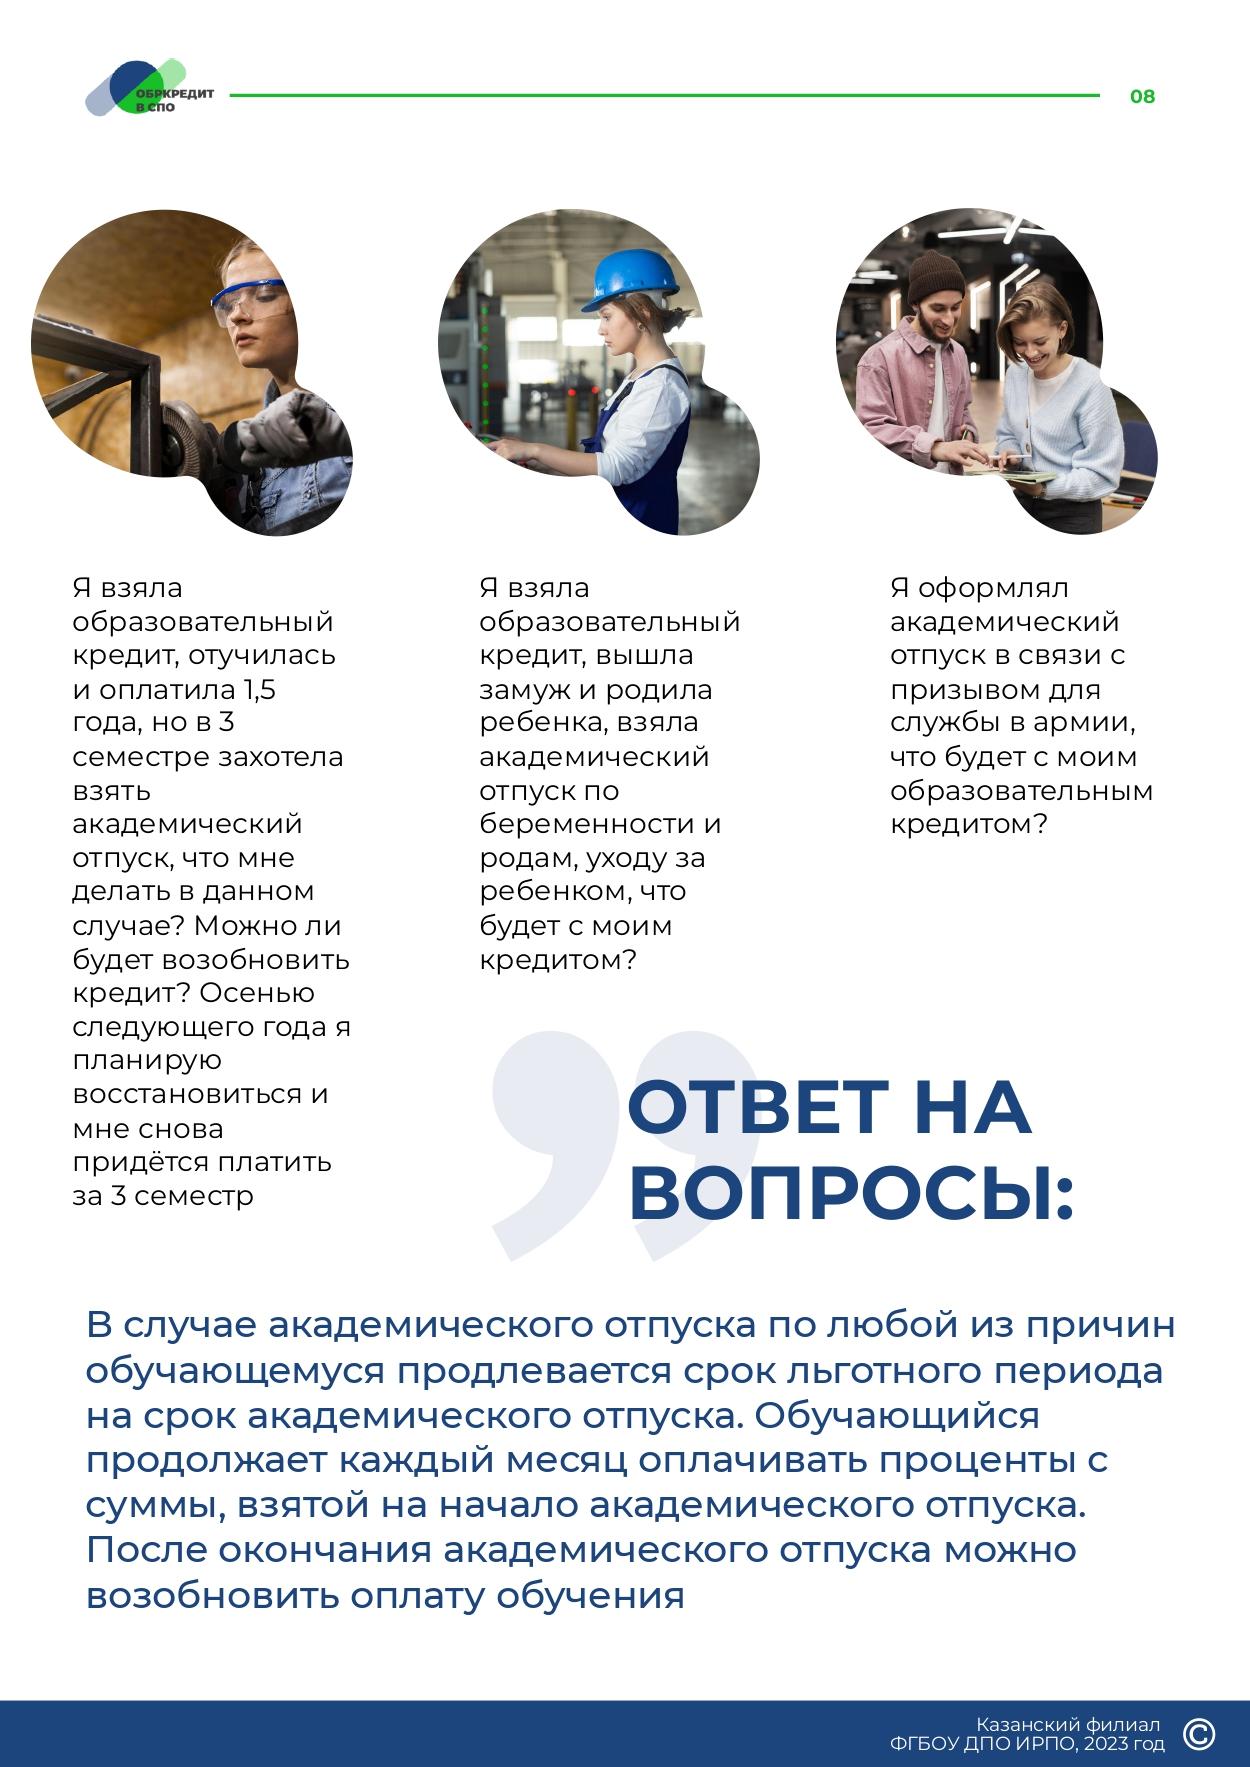 Obrazovatelnoe_kreditovanie_posobie_dlya_studentov_SPO_page-0008